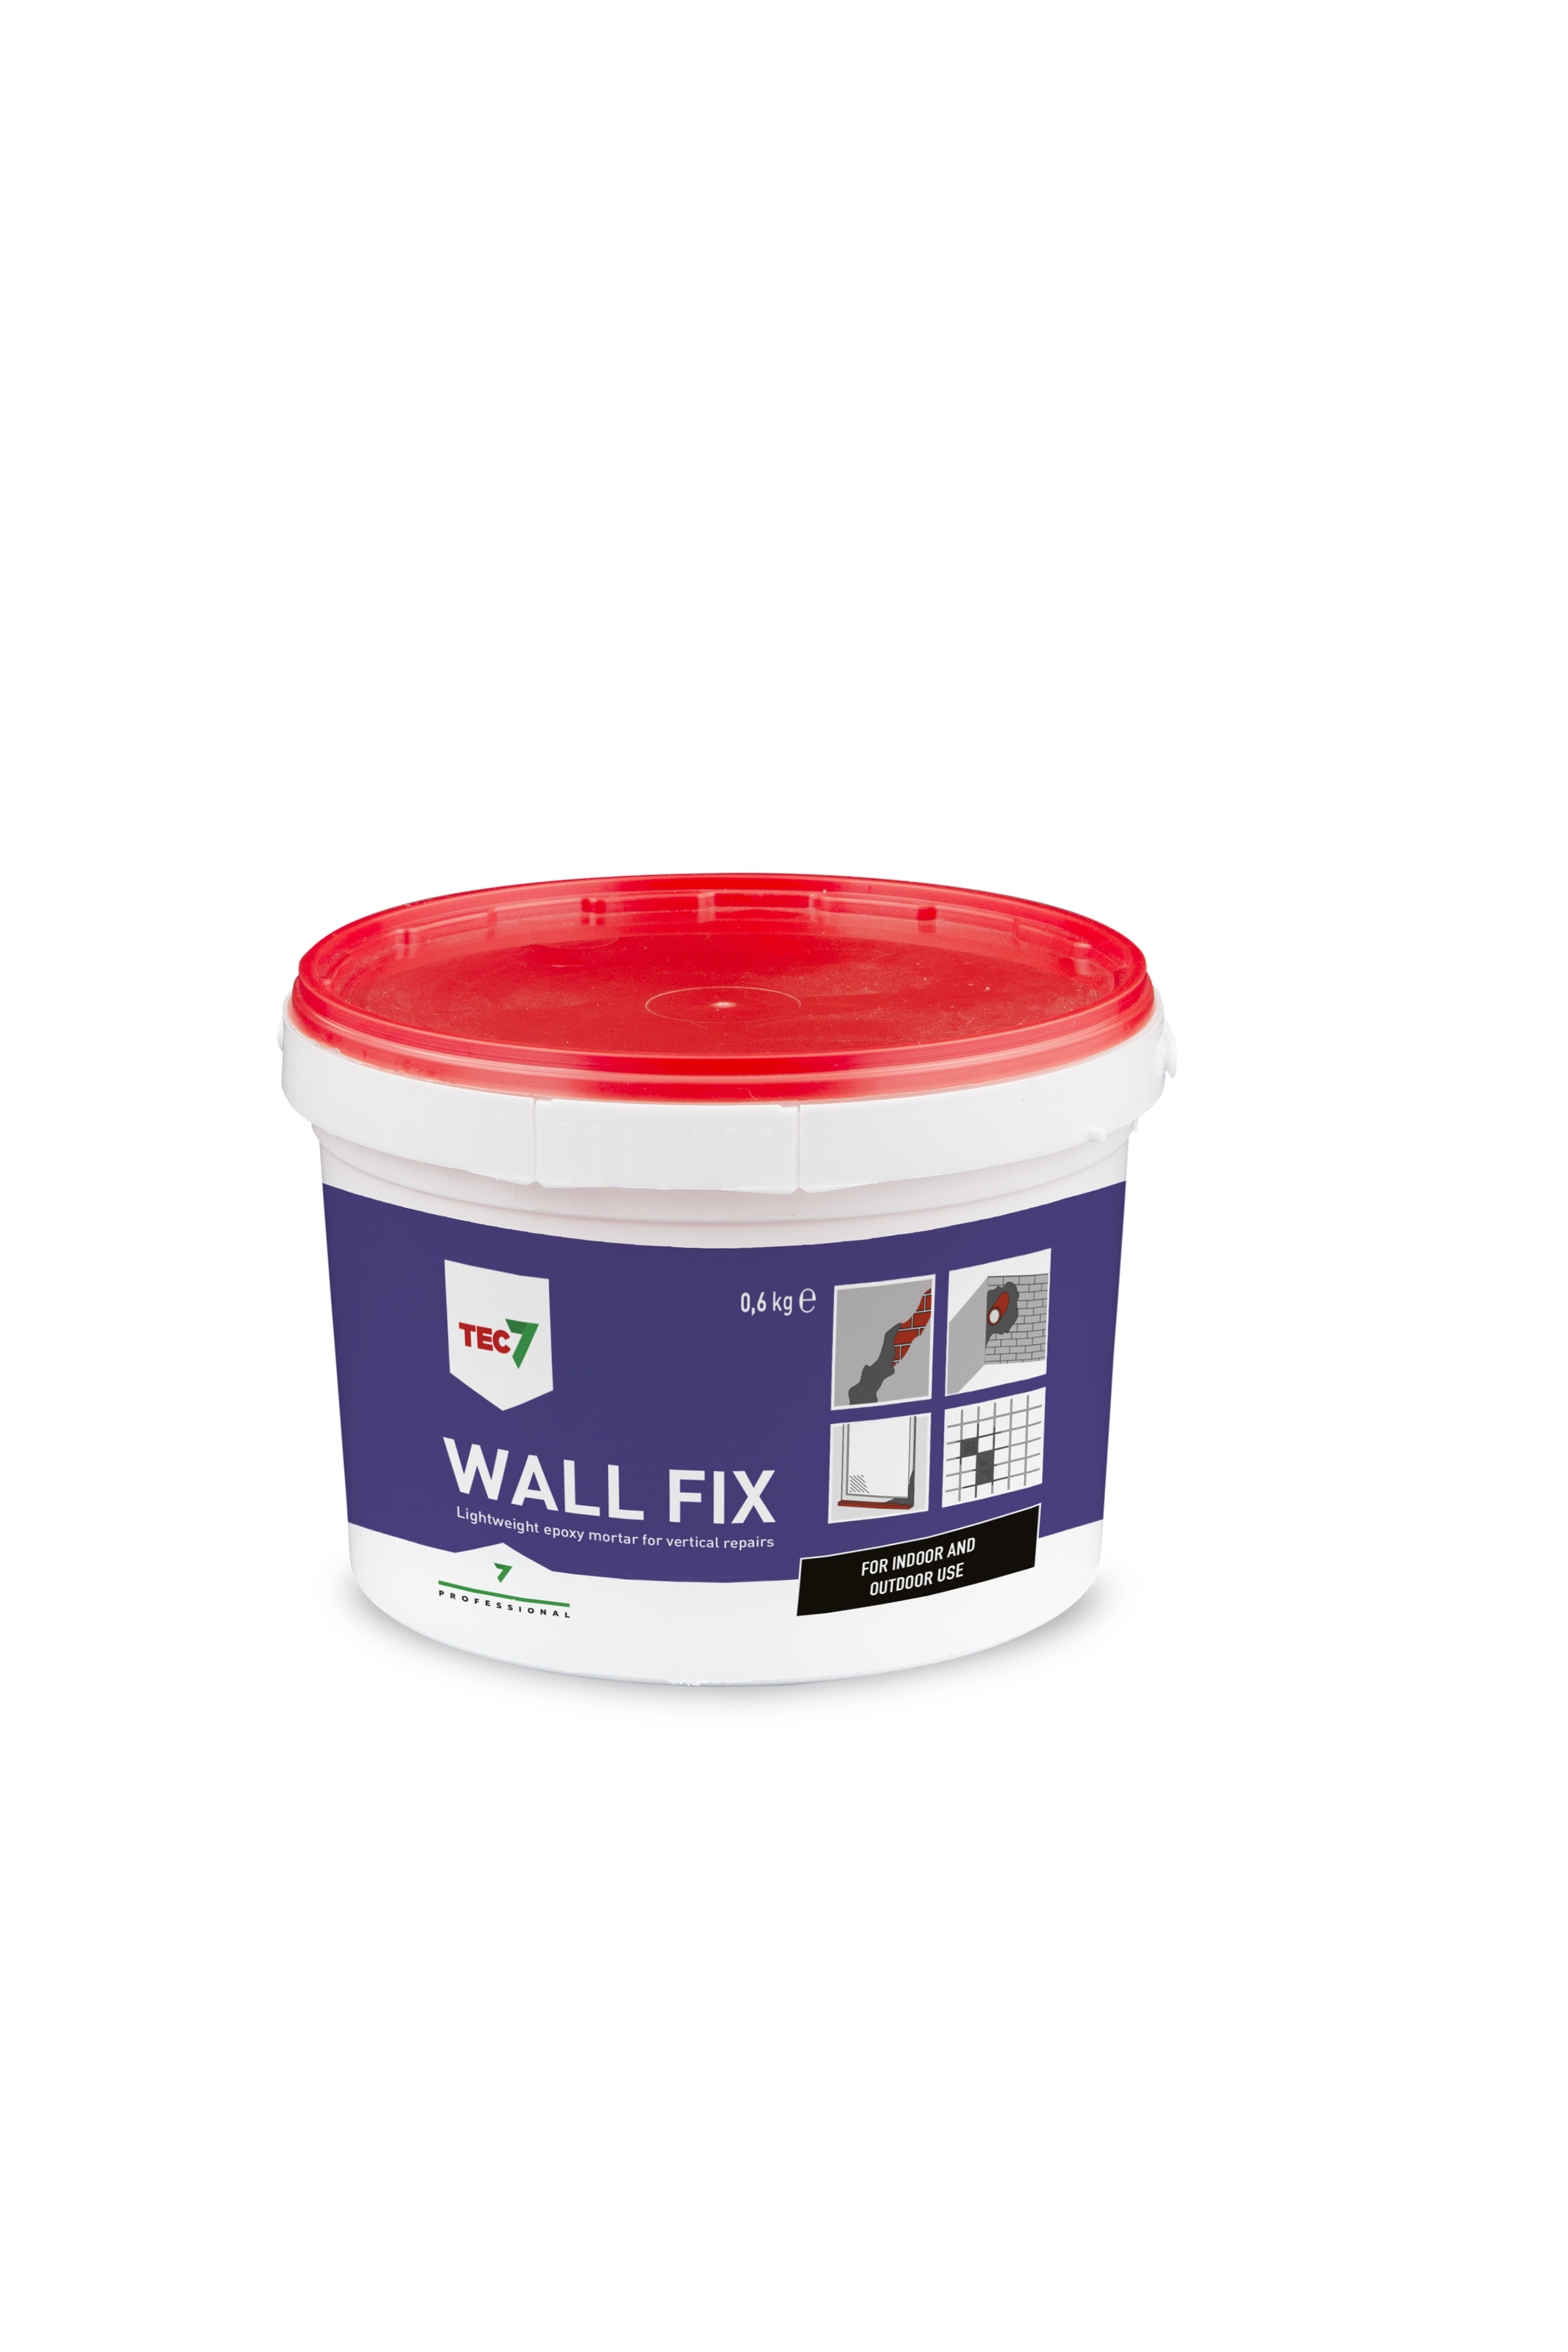 wall-fix-06kg-en